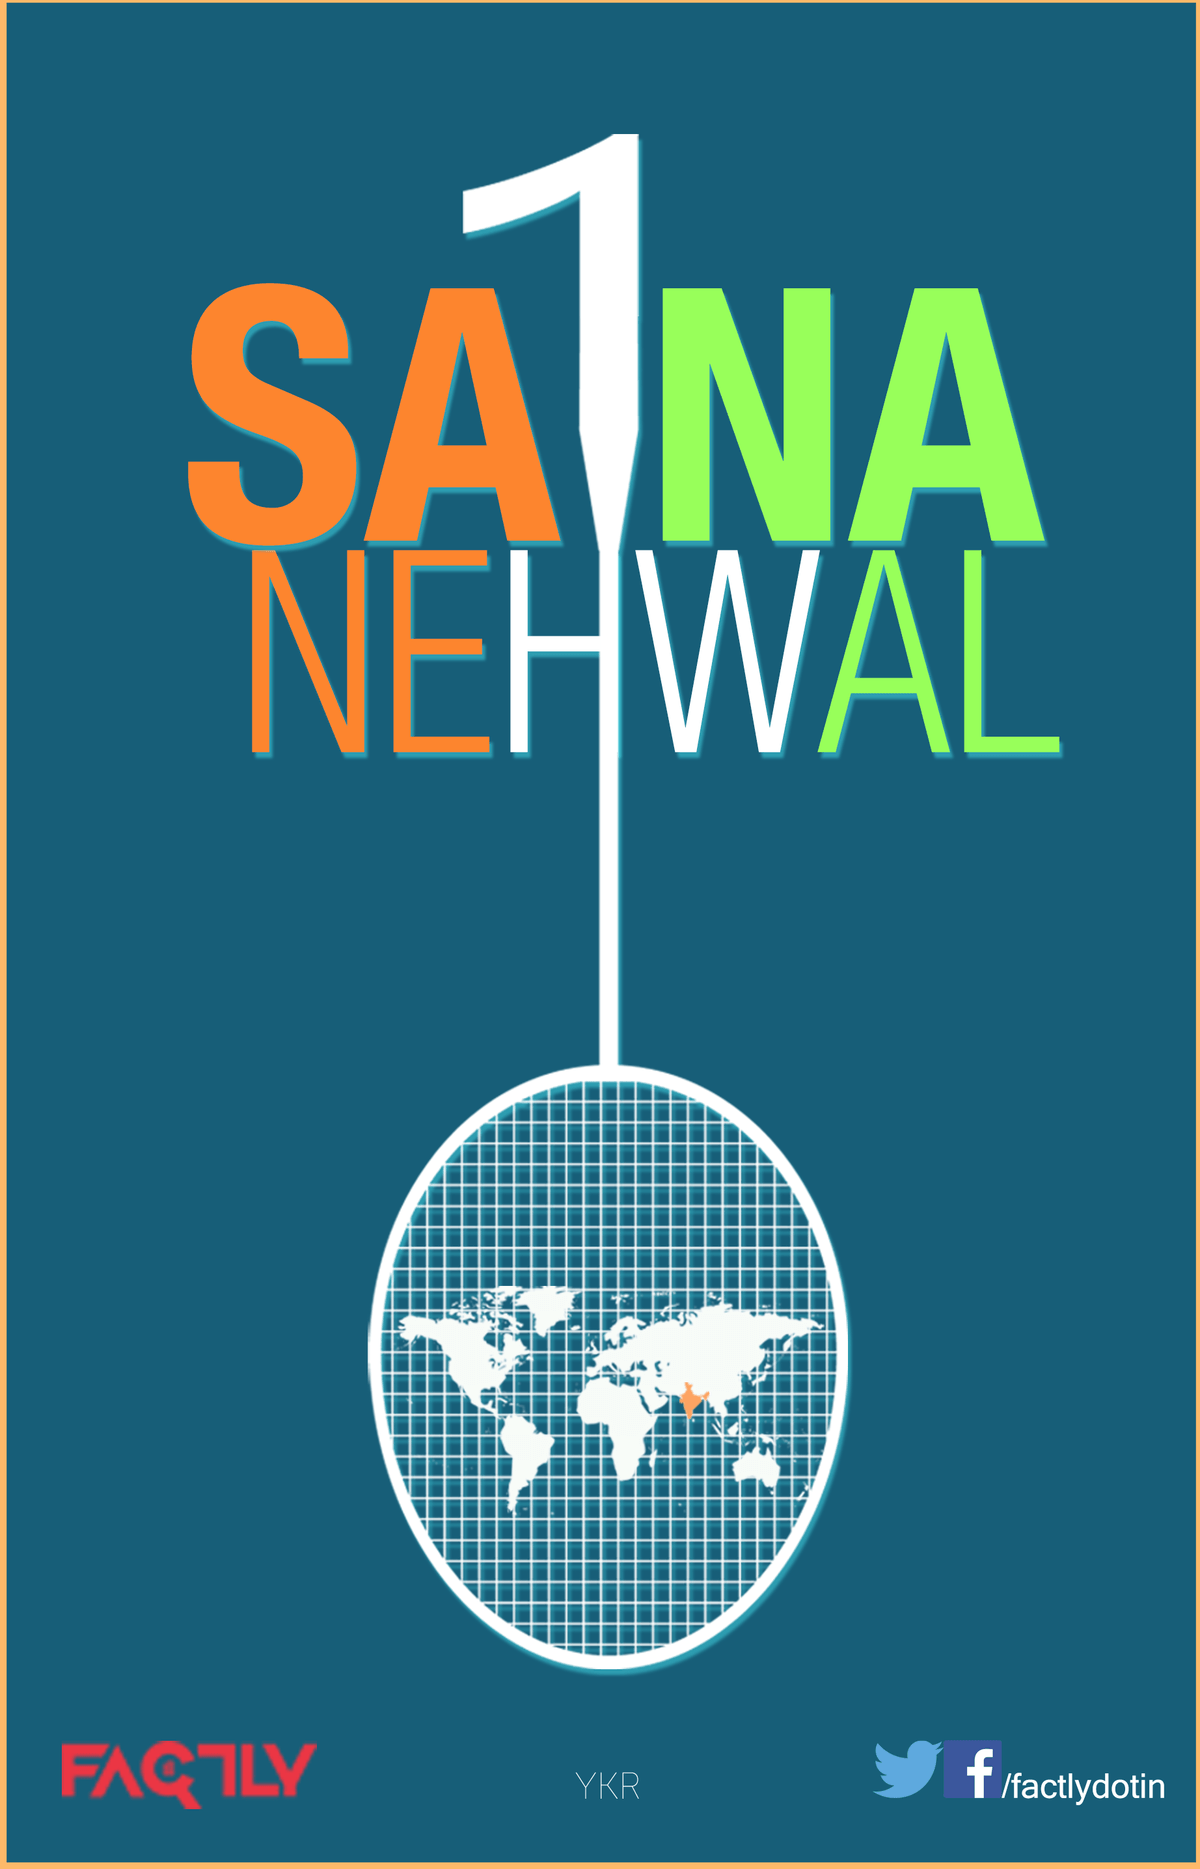 Saina Nehwal World No1 Badminton Player